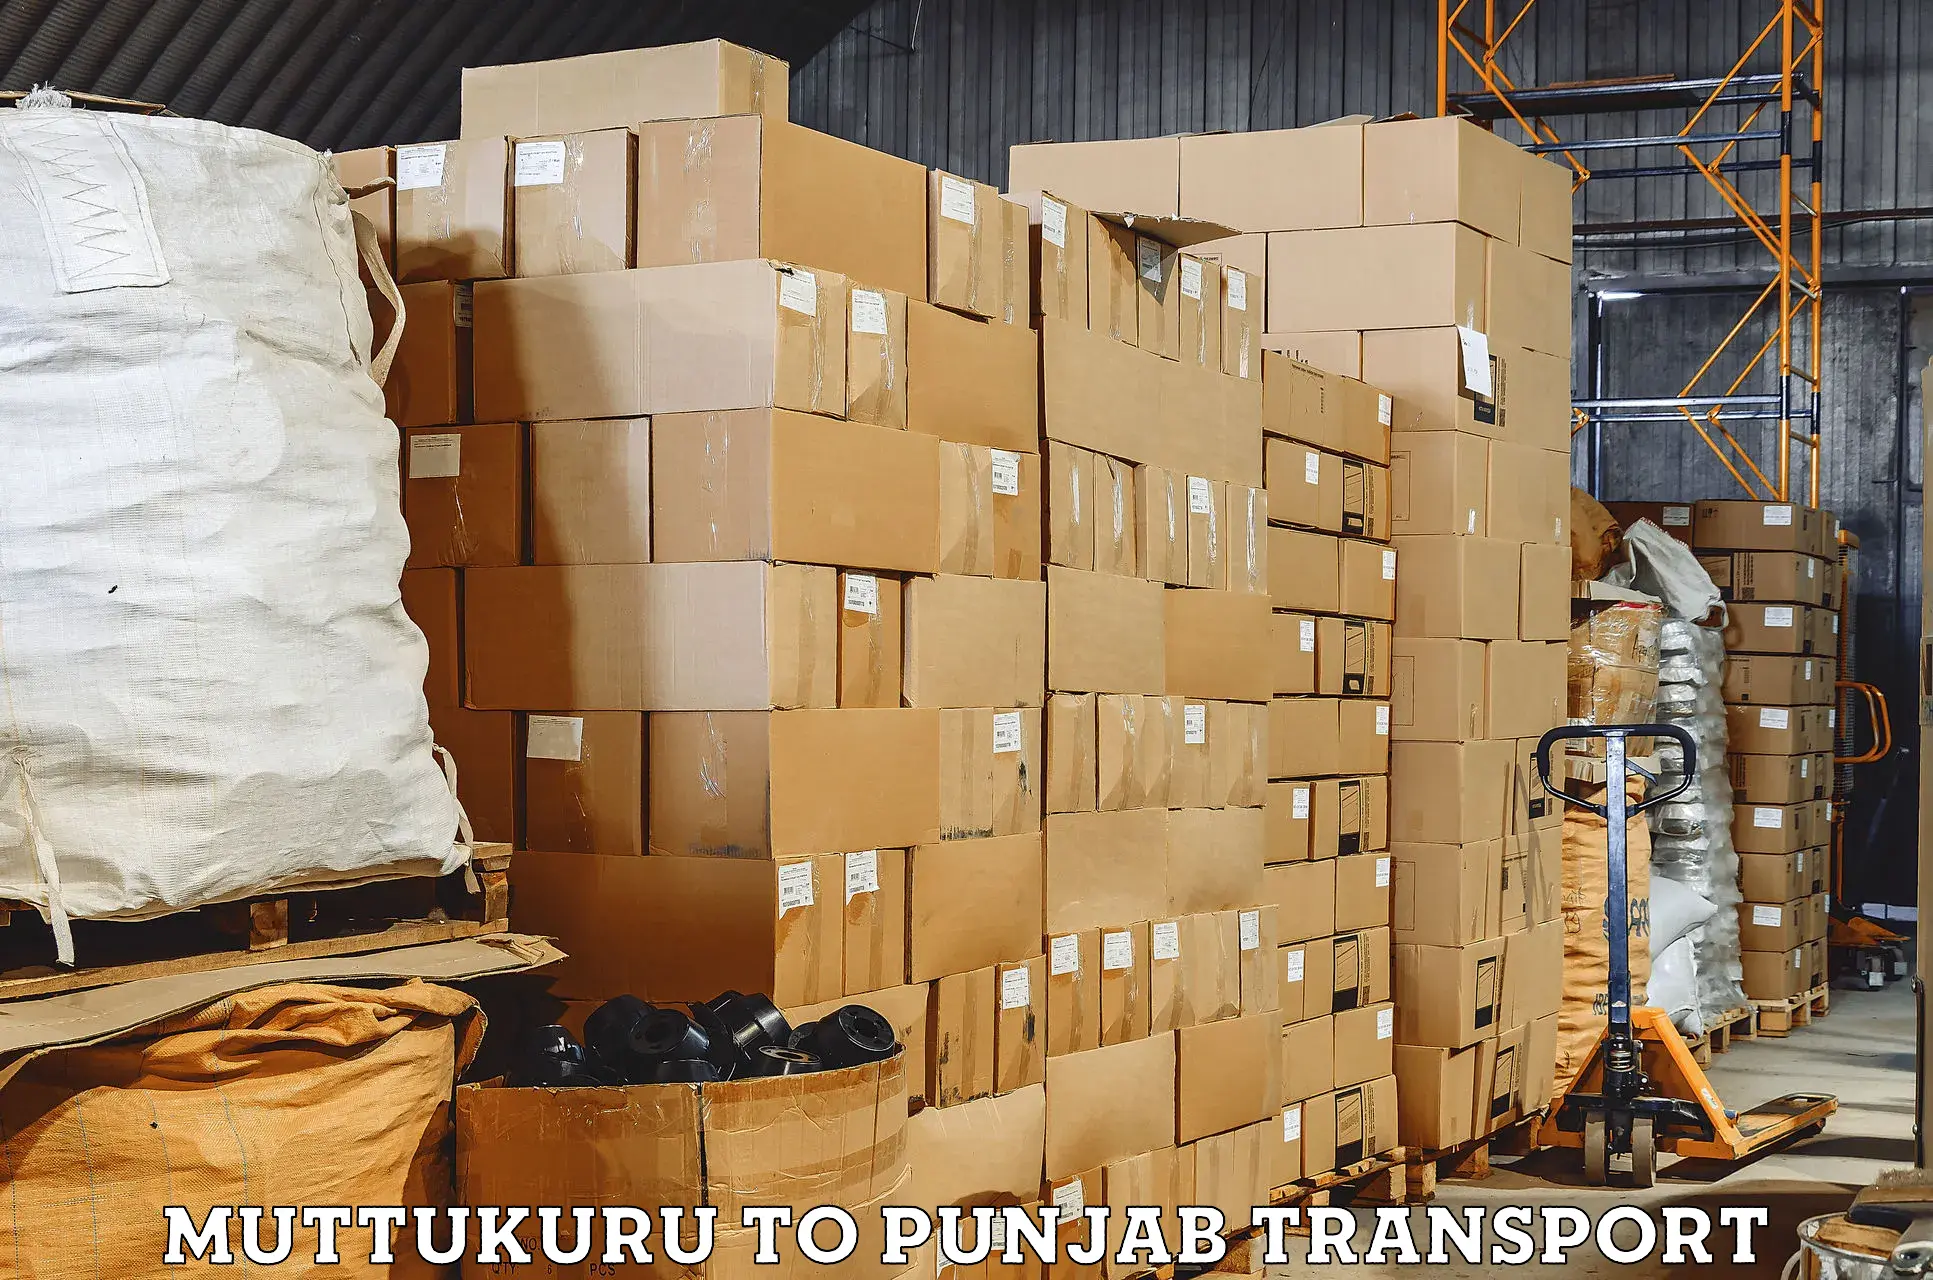 Daily transport service Muttukuru to Kotkapura